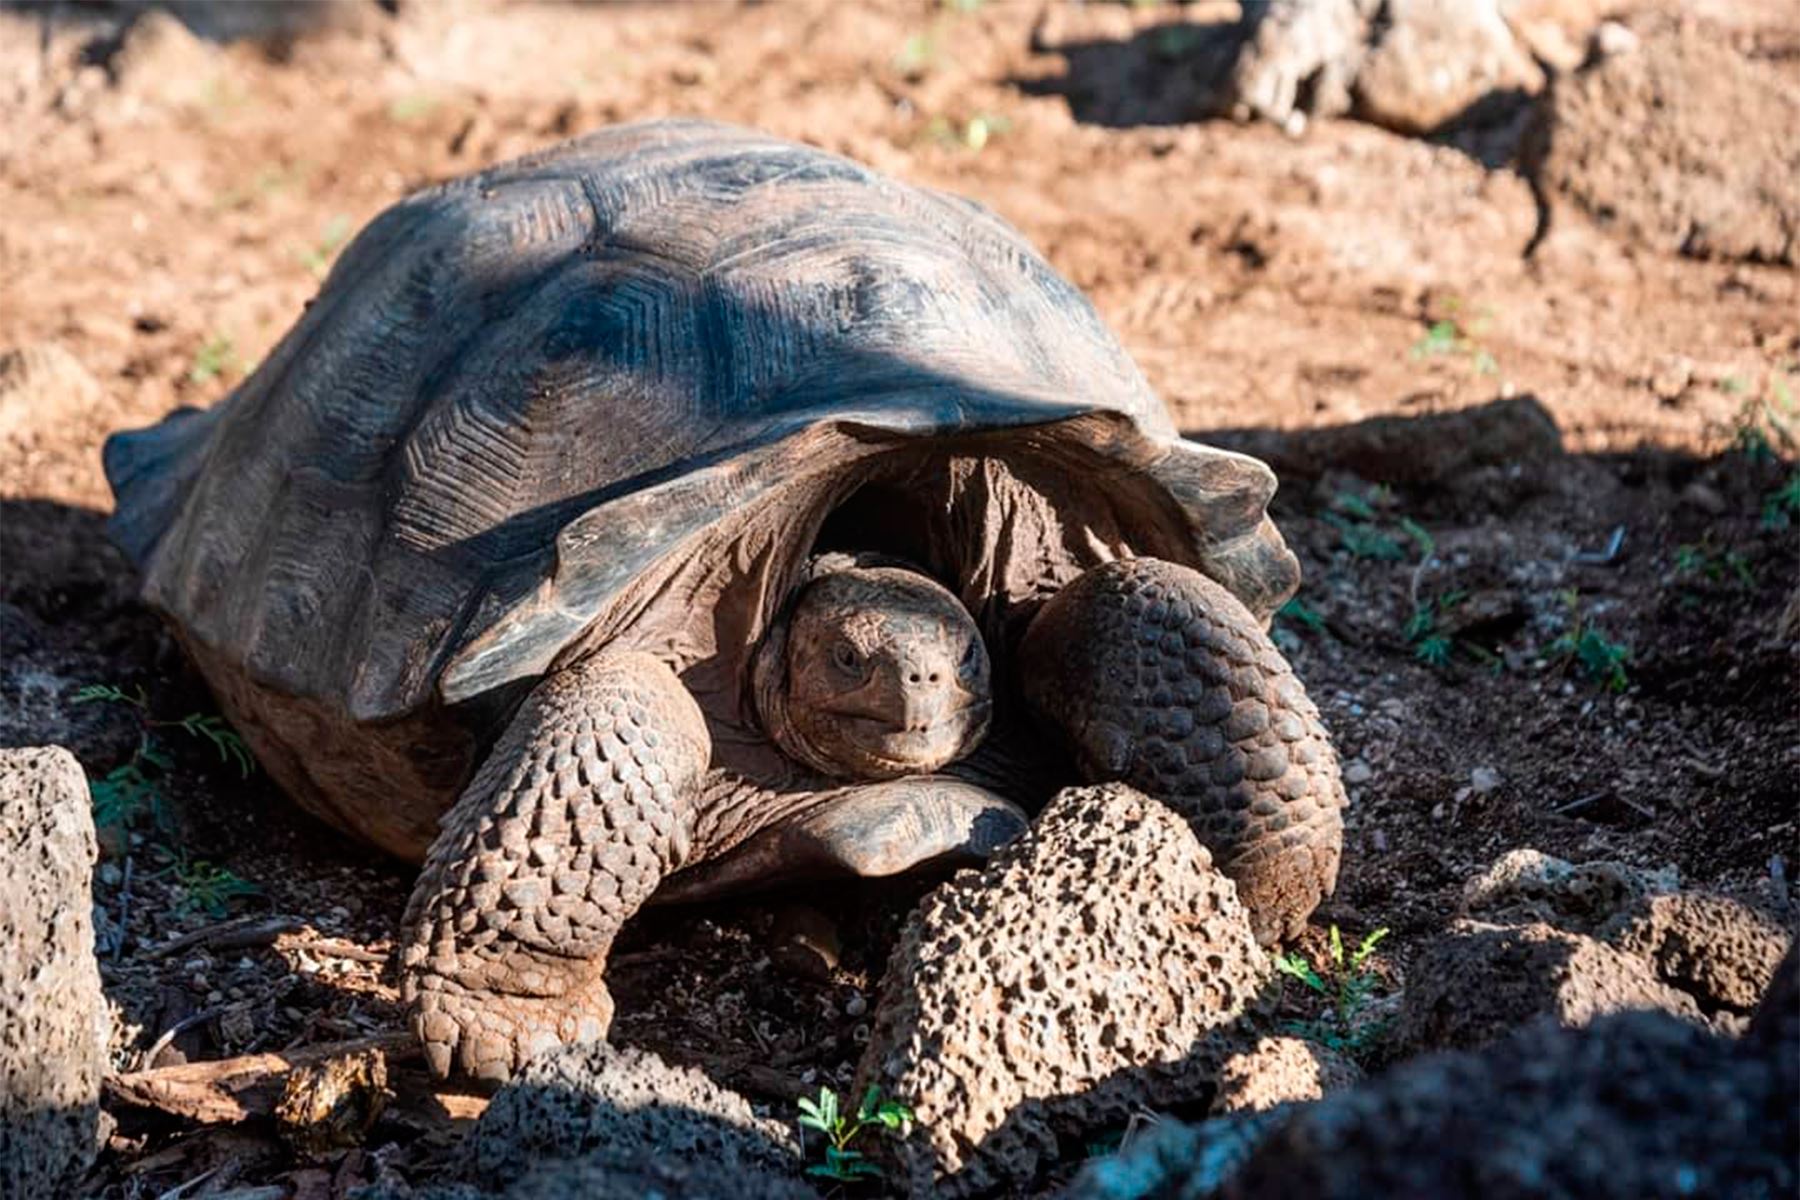 Una expedición a las islas Galápagos permitió encontrar tortugas gigantes con linajes parciales de especies consideradas extintas, como la del Solitario George. Foto: Parque Nacional Galápagos de Ecuador.